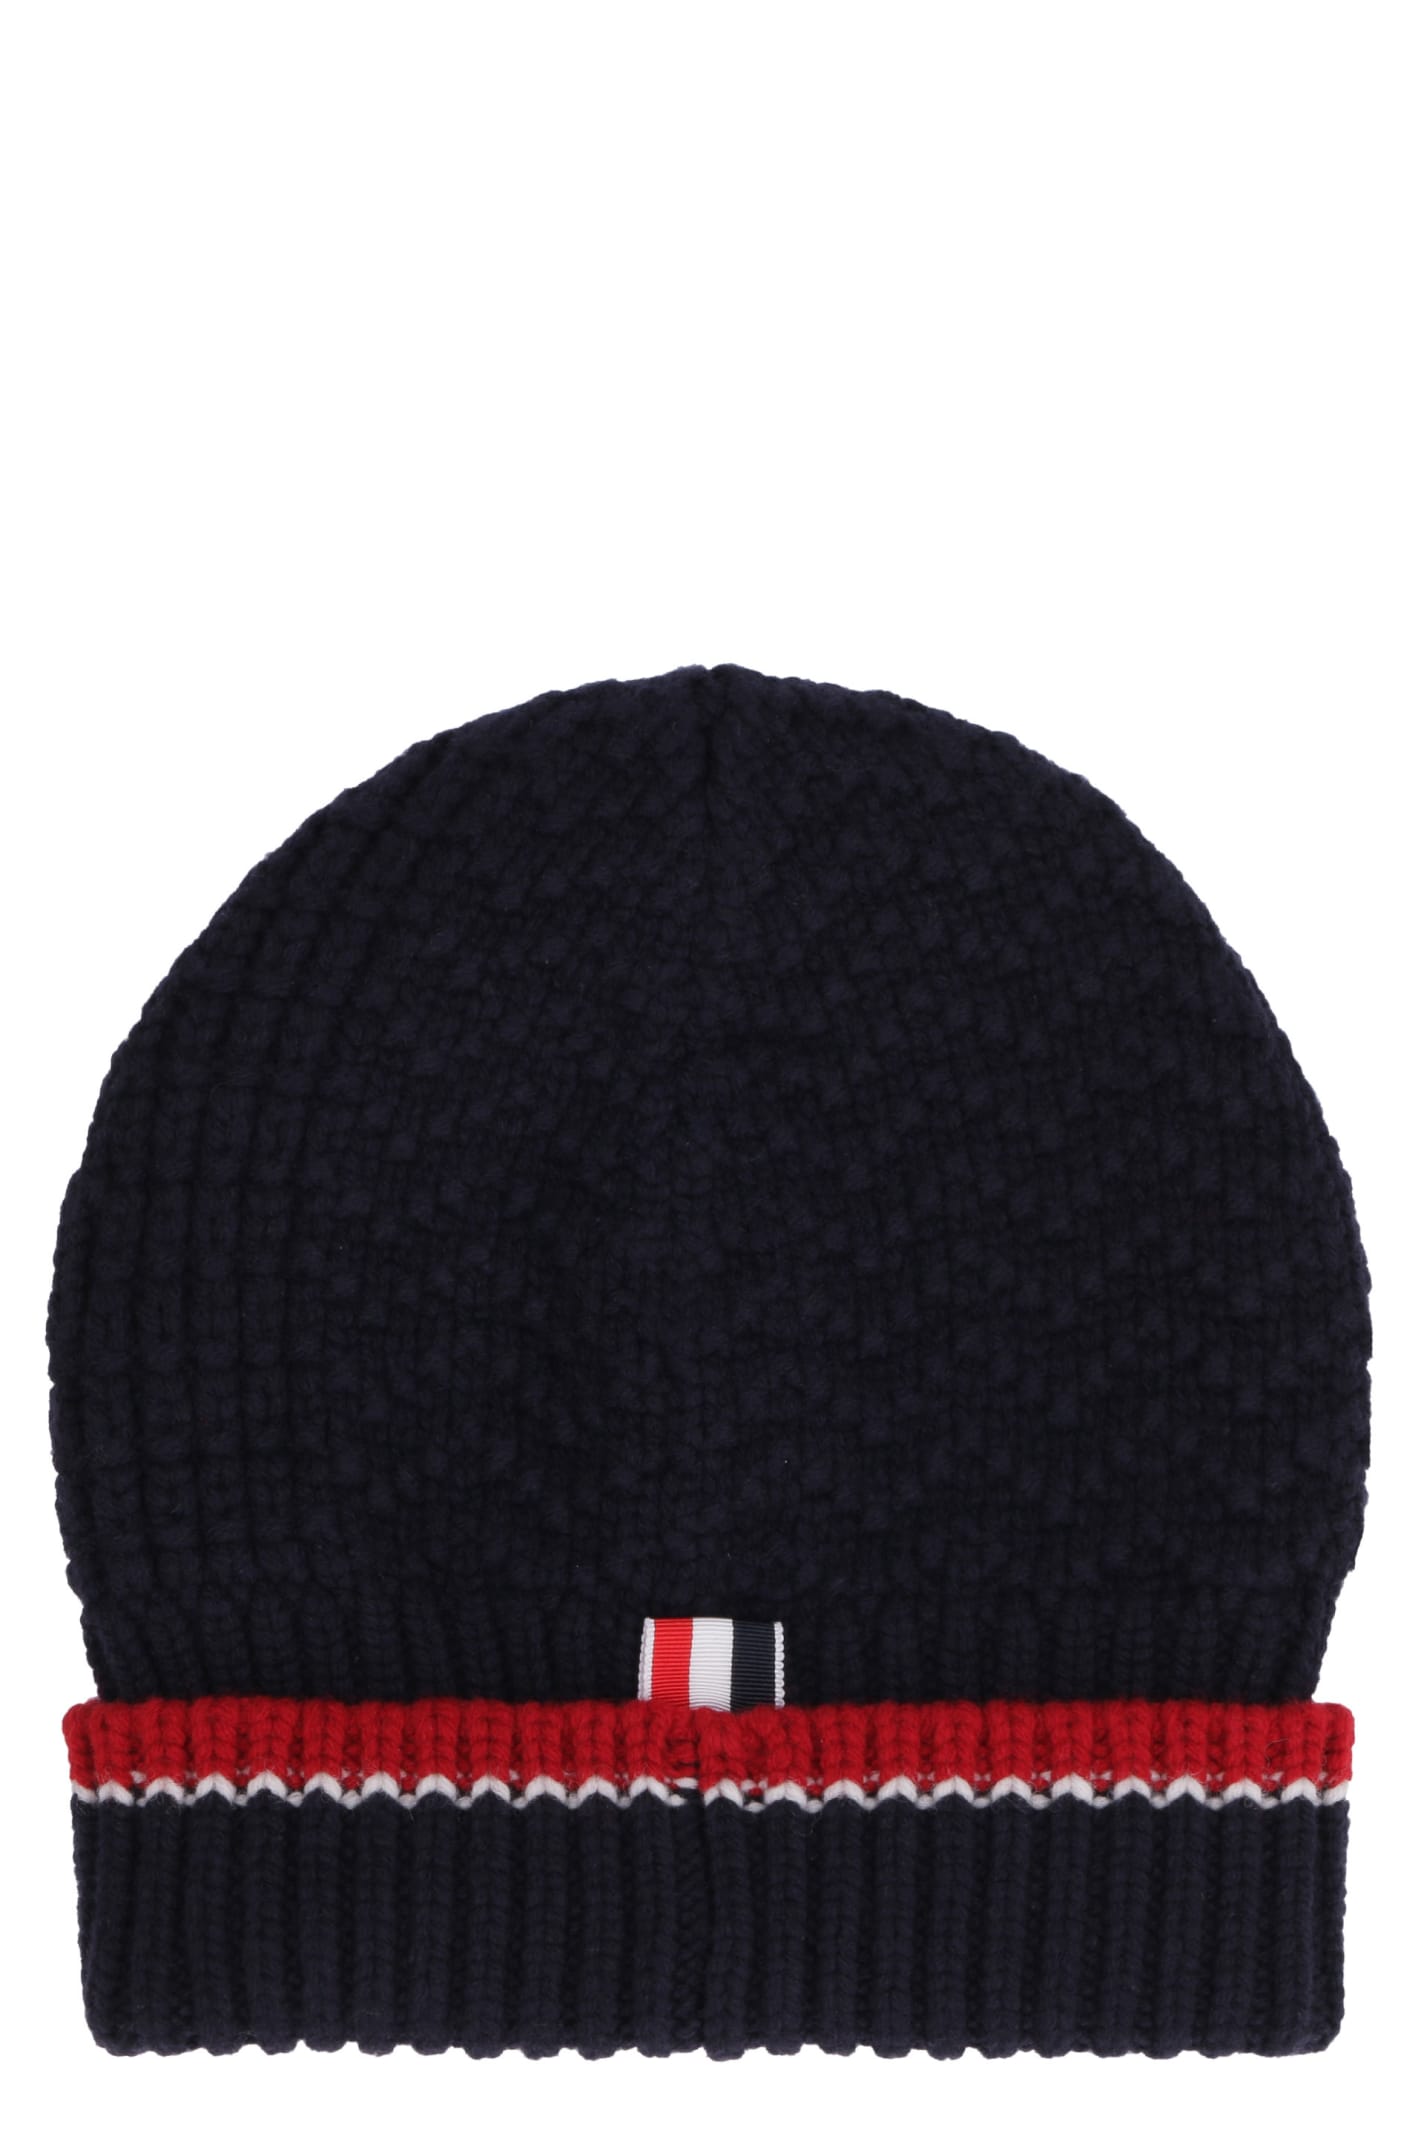 Thom Browne Merino Wool Hat